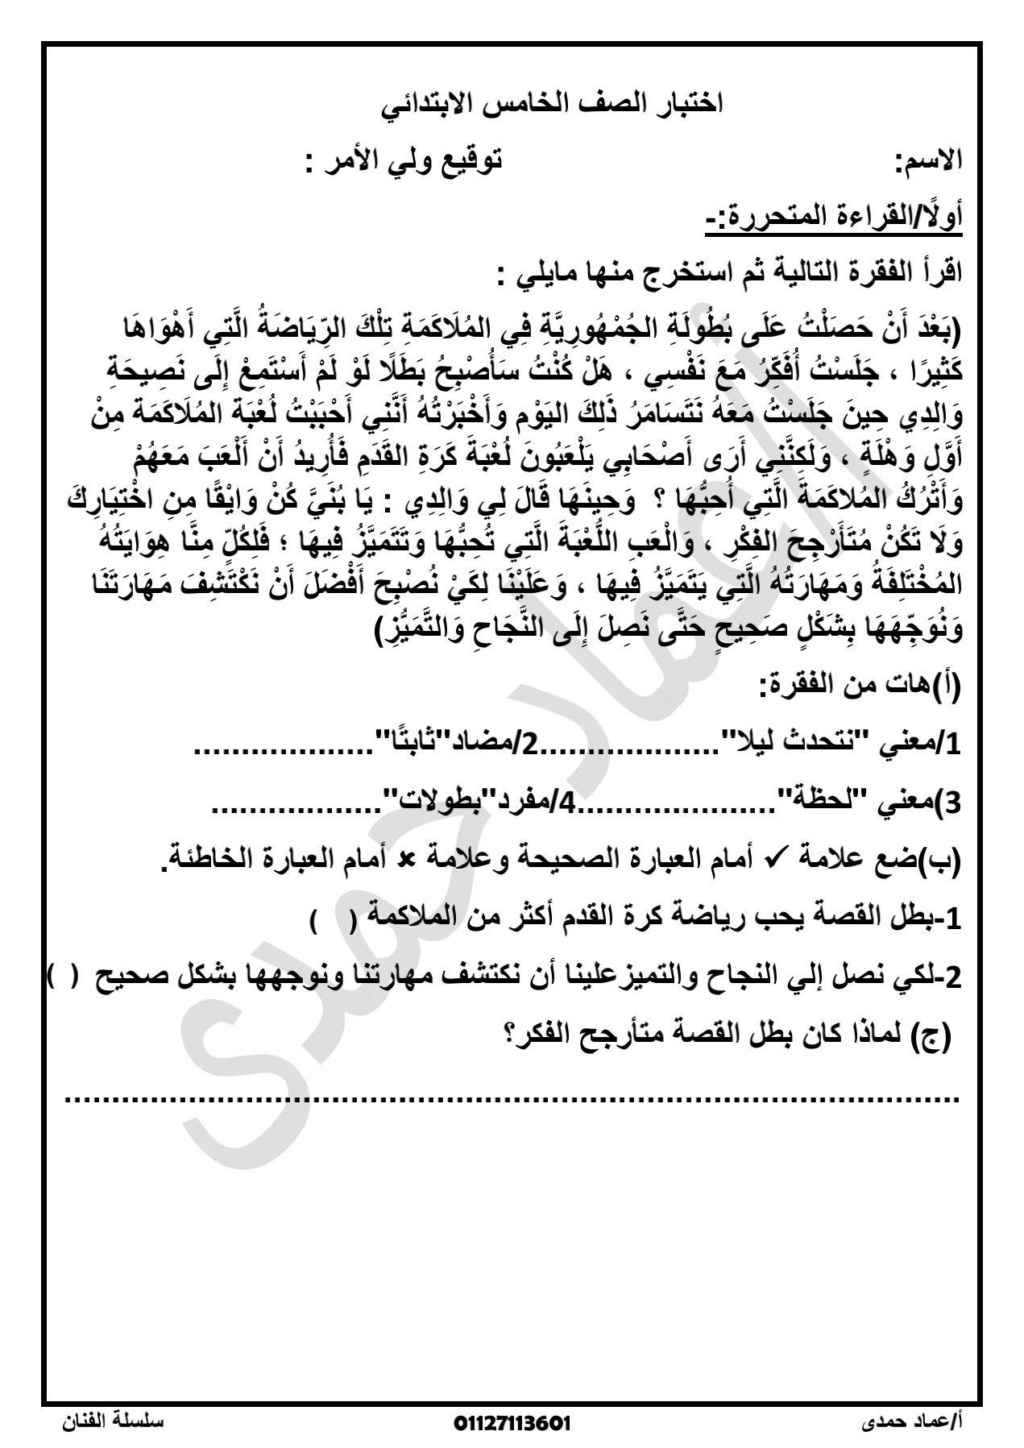 امتحان لغة عربية للصف الخامس الابتدائي علي مقرر شهر أكتوبر أ. عماد حمدي 655